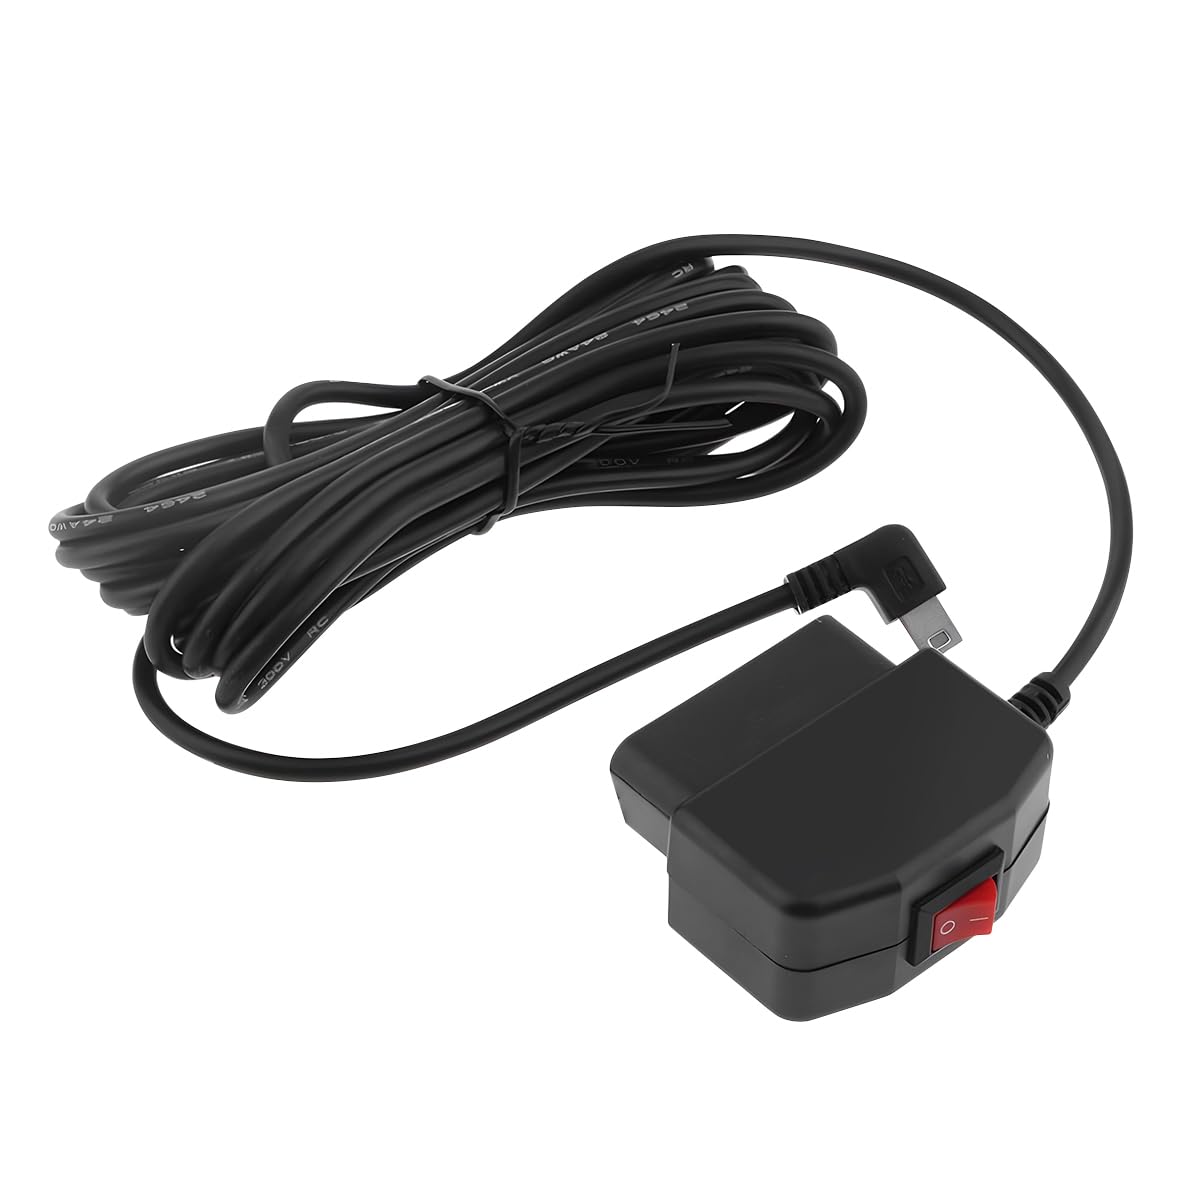 CGEAMDY Auto Kamera Dashcam Kabel, OBD-Anschluss, OBD-Stromkabel, Mini USB Netzadapter Ladekabel mit Schalter Taste, 24 Stunden Berwachung Modus und Acc Modus für Auto von CGEAMDY